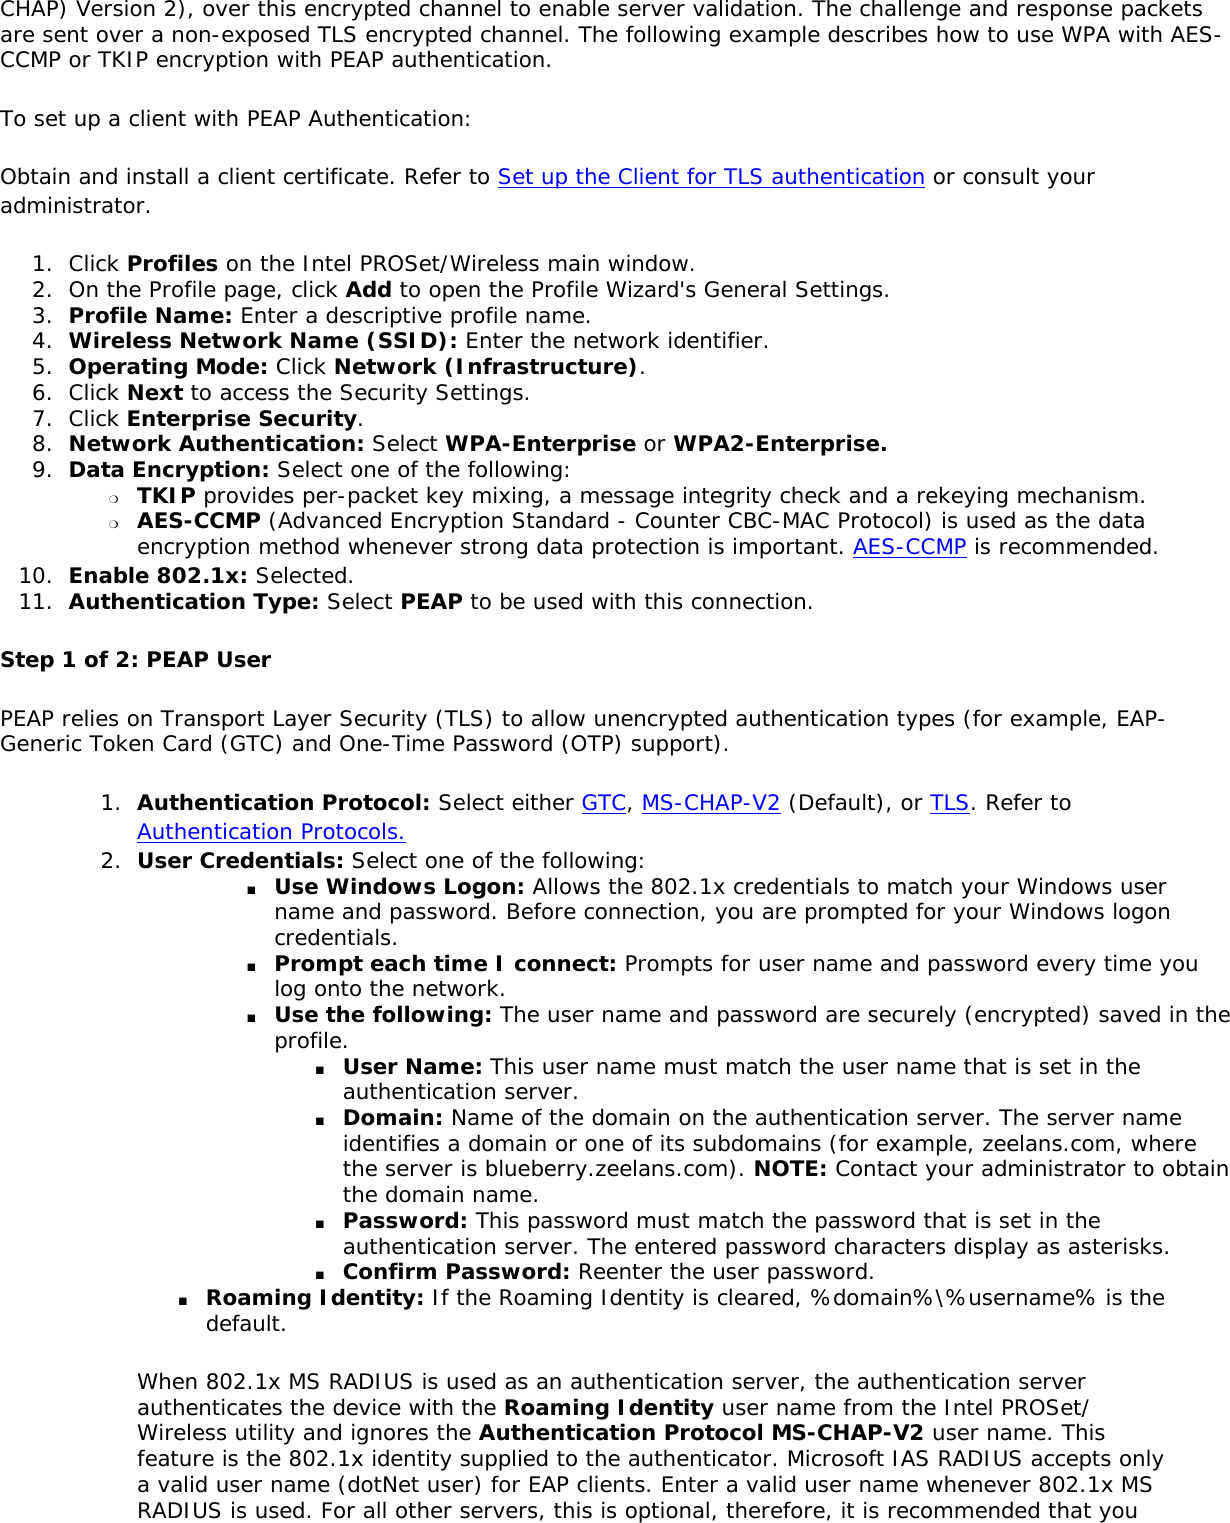 Microsoft Em Client User Manual Guide Pdf